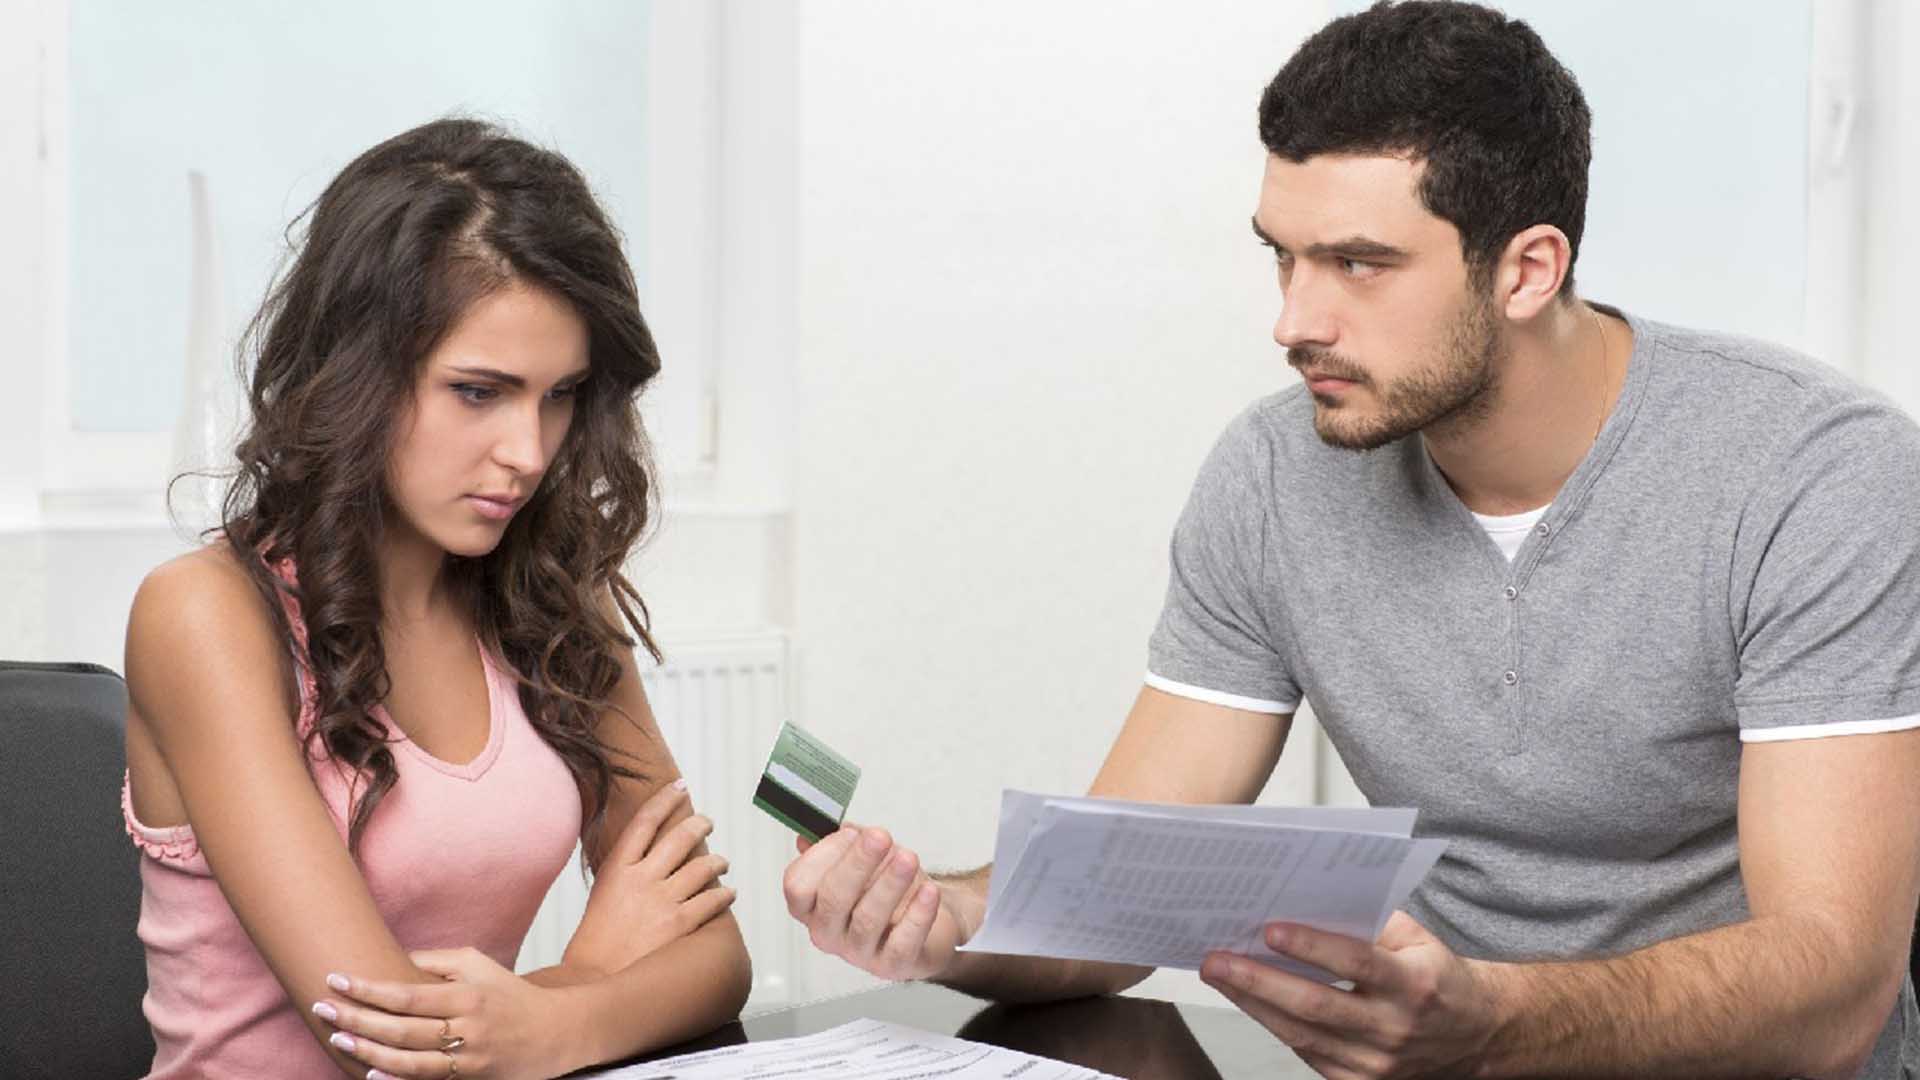 Разделить кредит между супругами. Делить имущество при разводе. Девушка с волосами. Раздел долгов супругов. Муж и жена делят кредит.